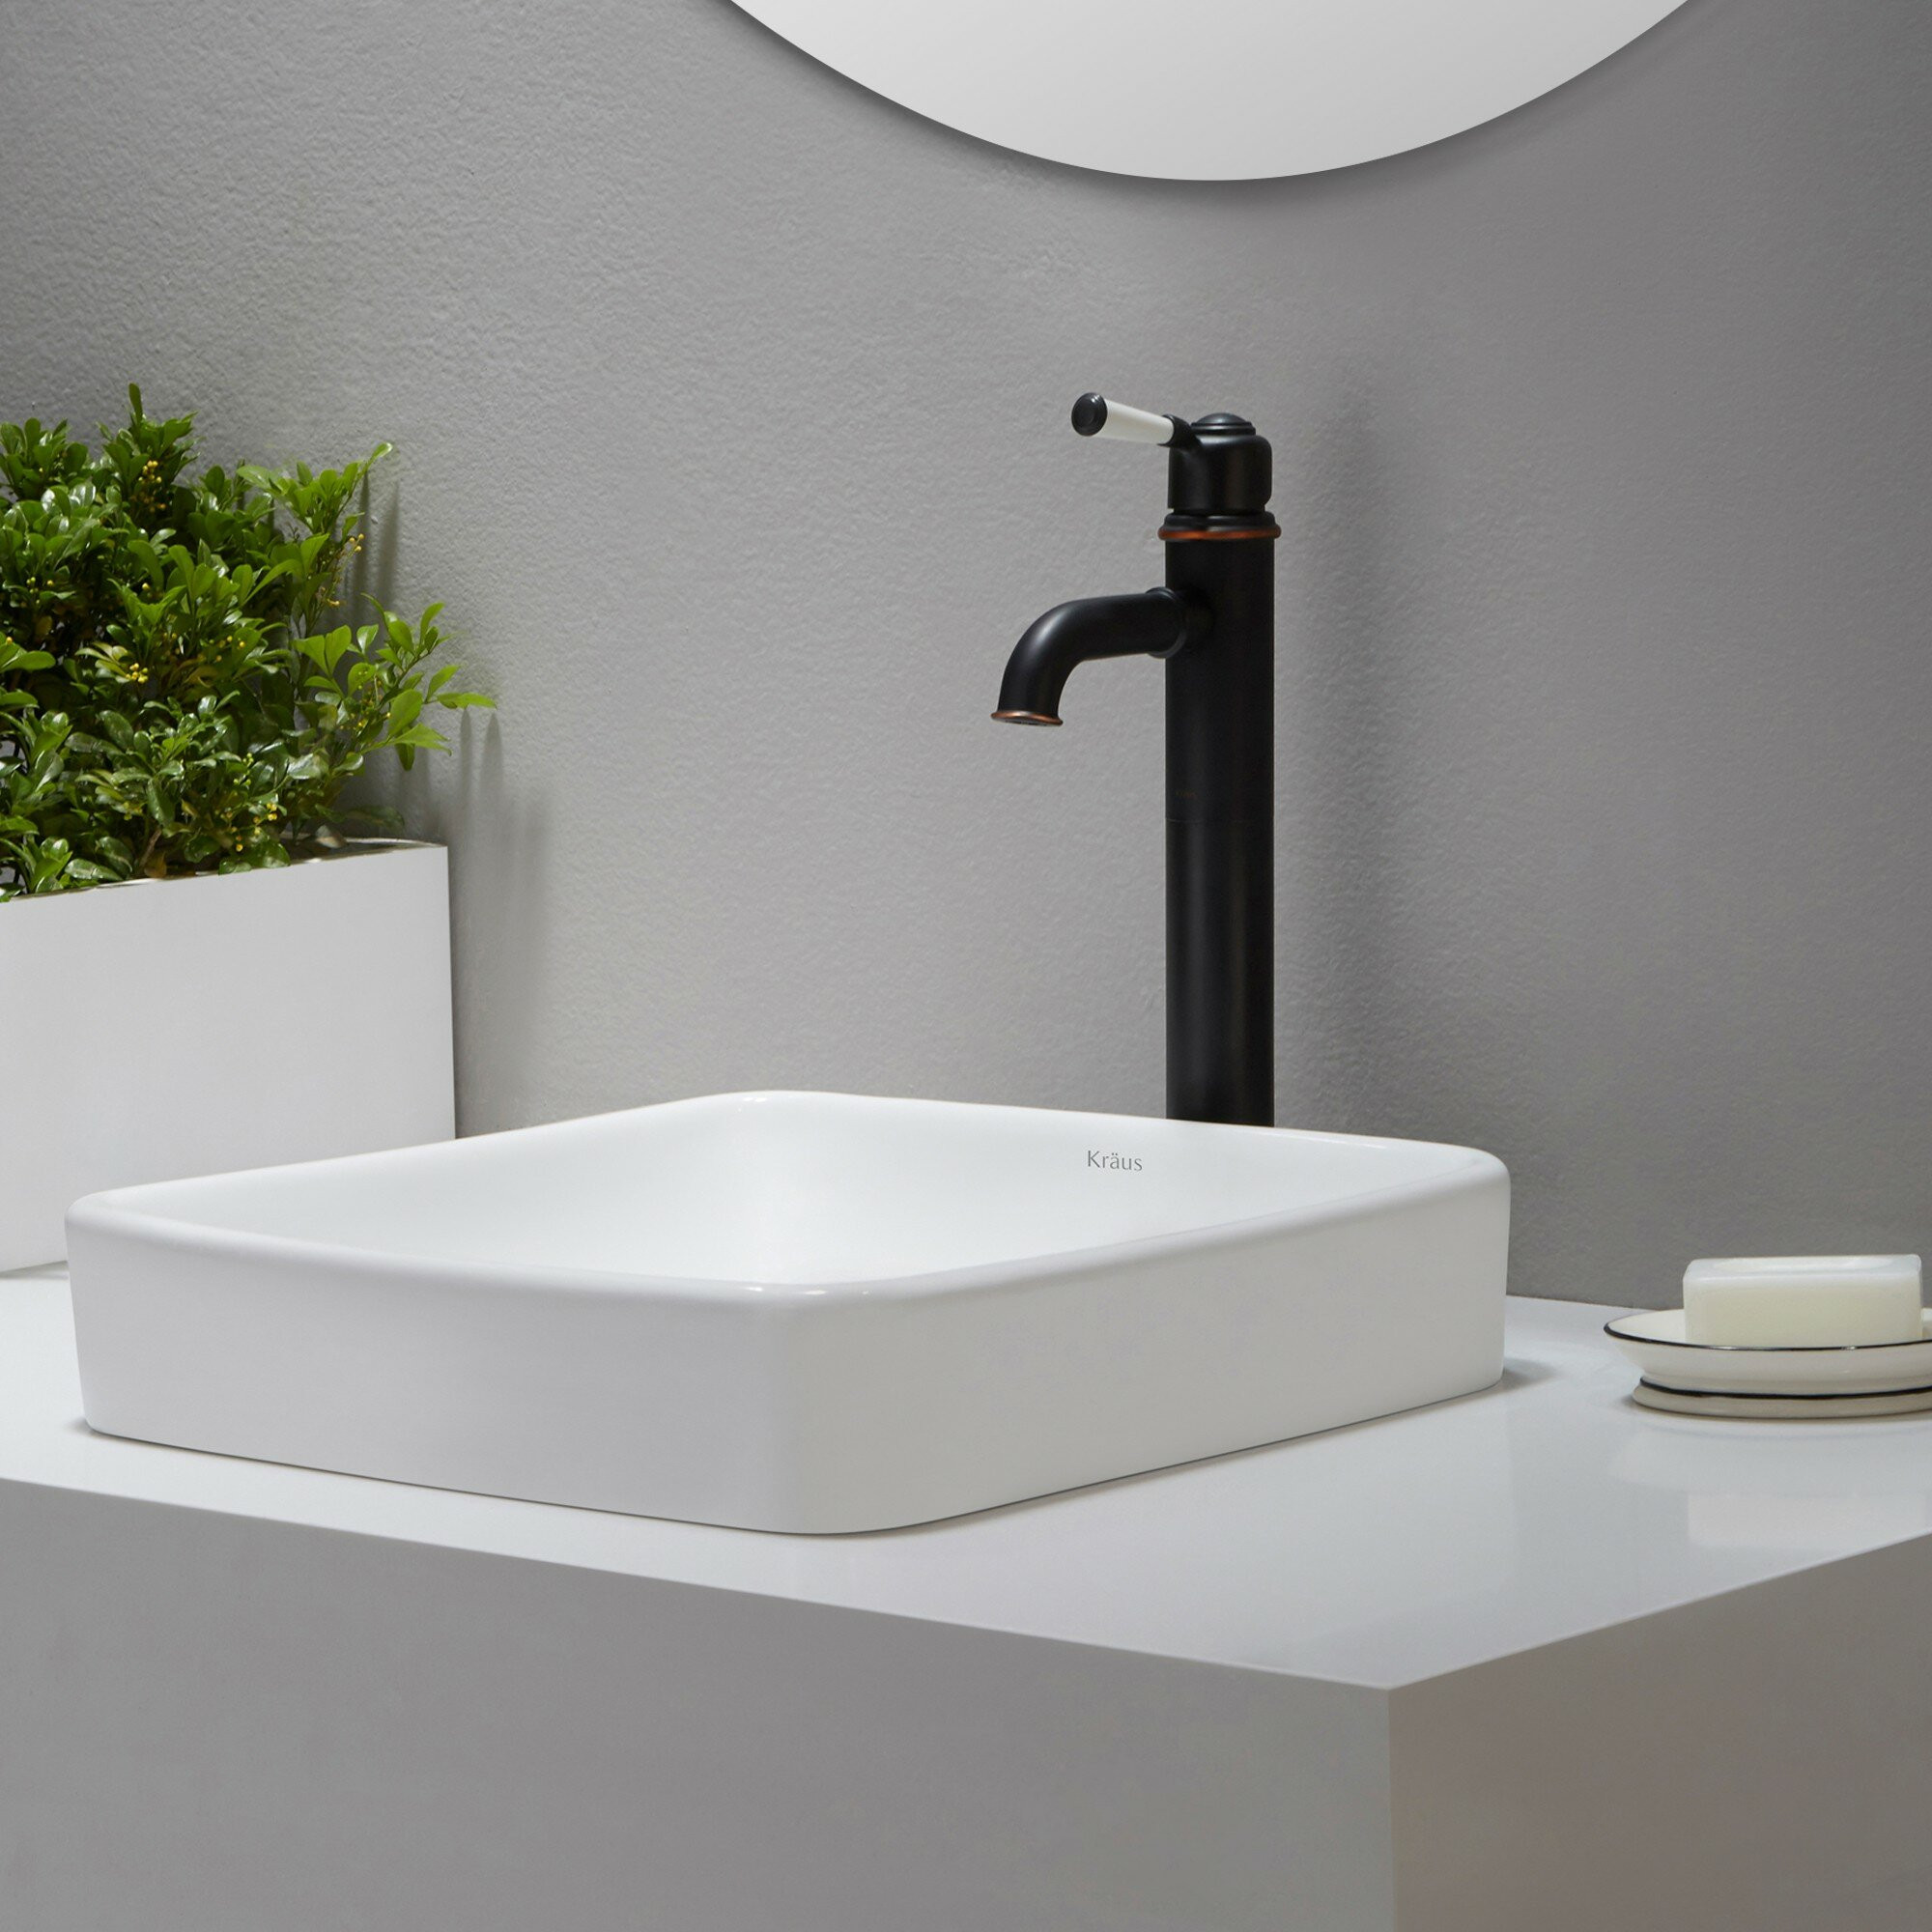 Semi Recessed Bathroom Sink
 Kraus Elavo™ Ceramic Square Semi Recessed Bathroom Sink